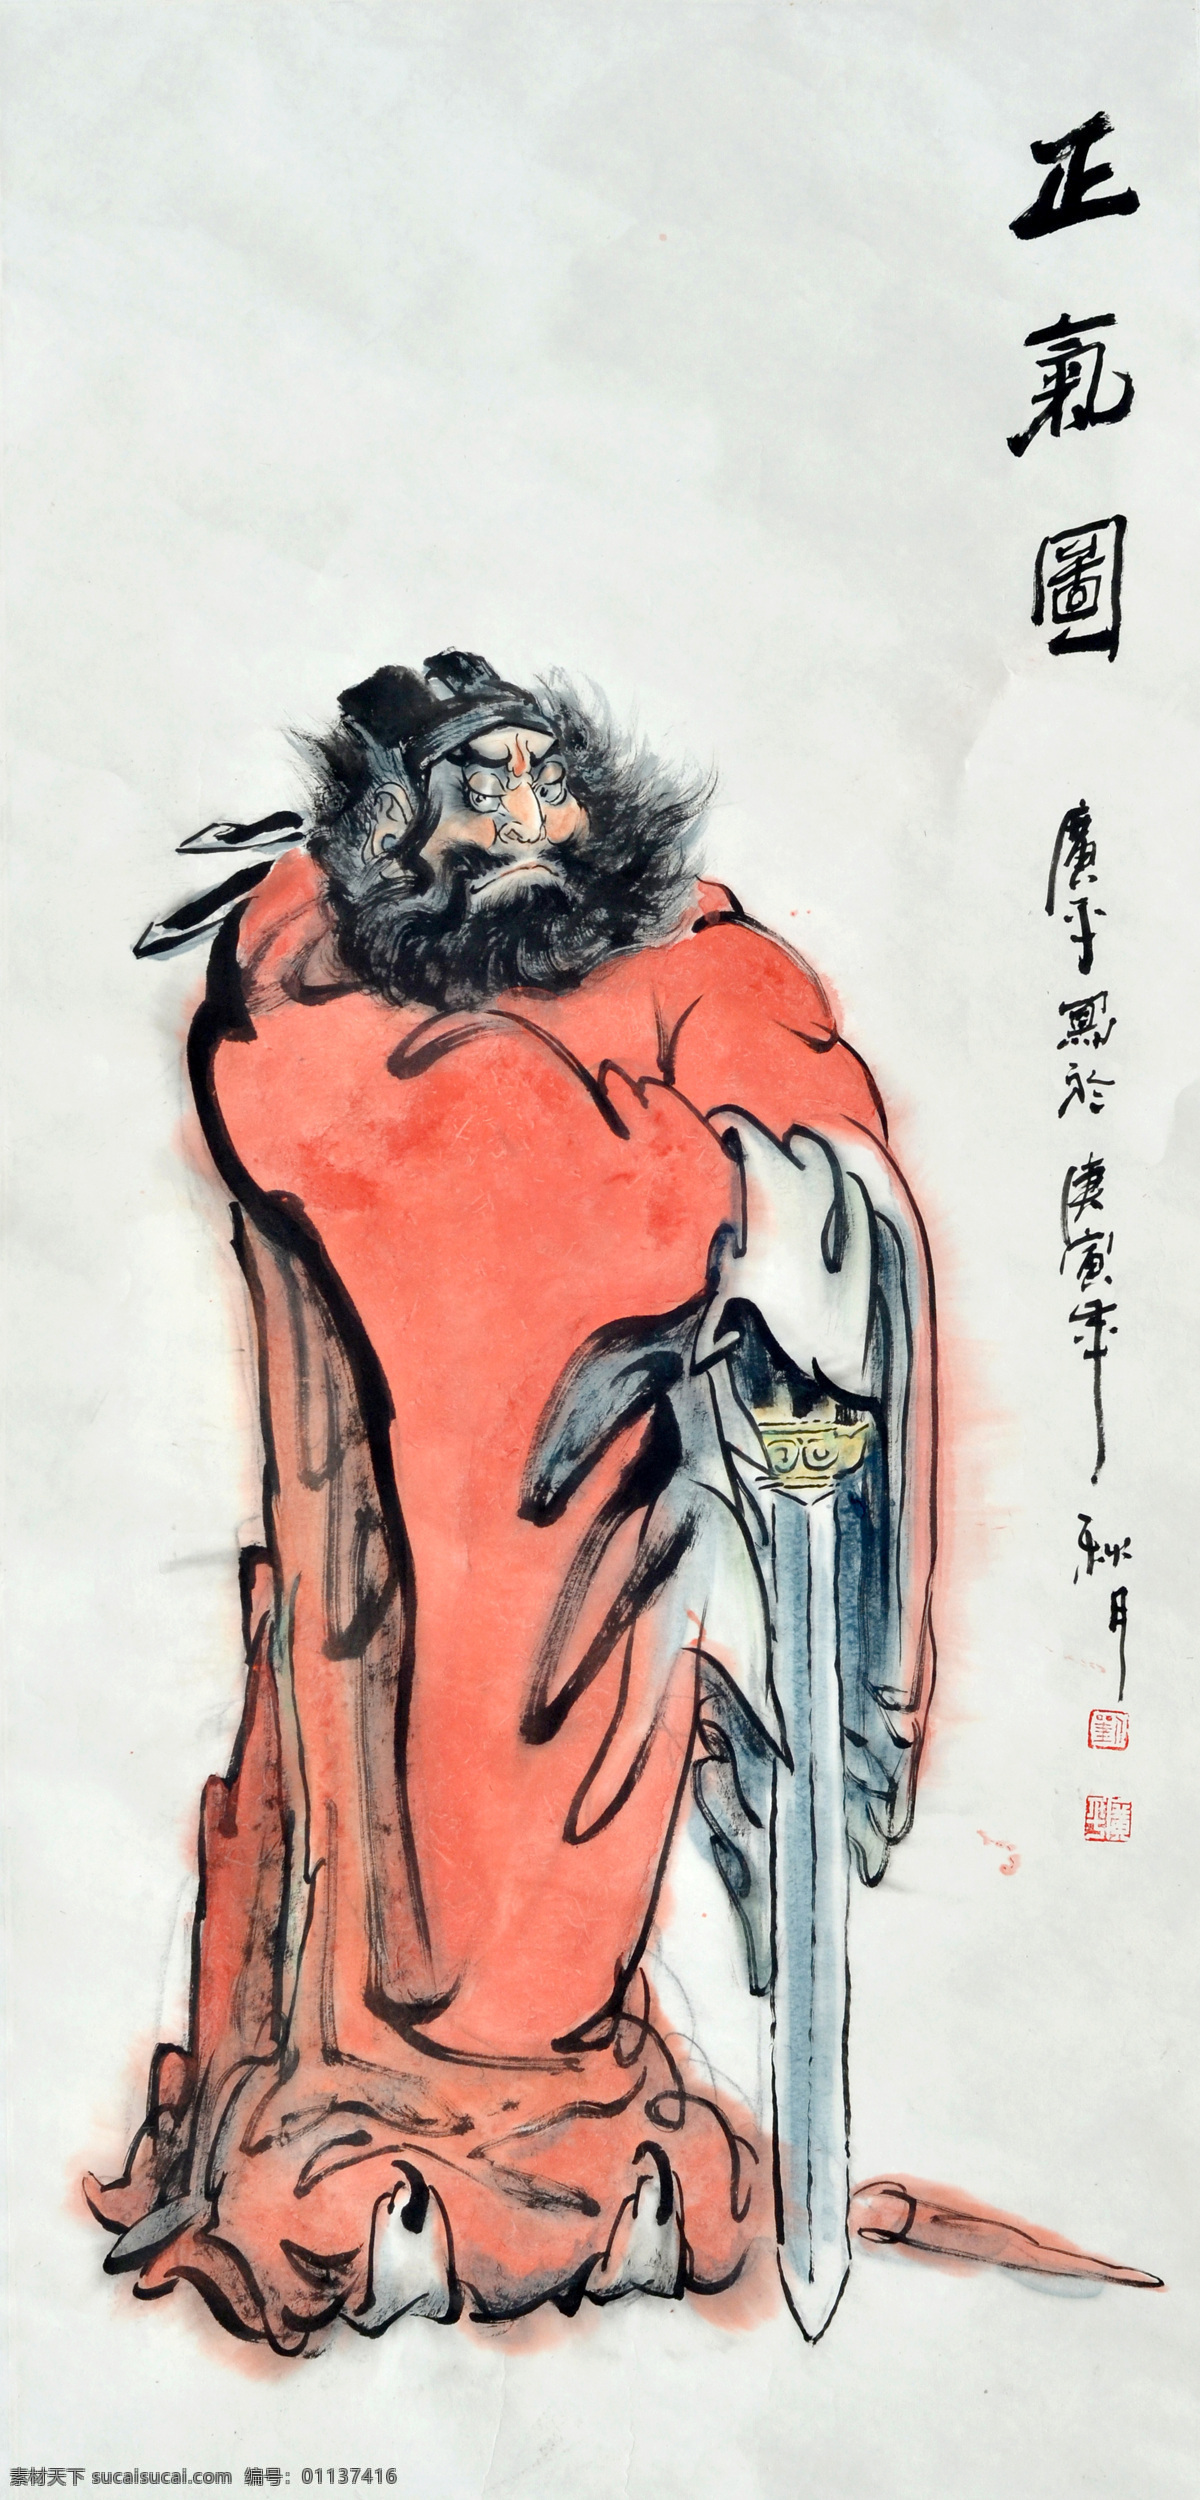 正气图 美术 中国画 水墨画 人物画 男人 钟馗 道士 国画艺术 绘画书法 文化艺术